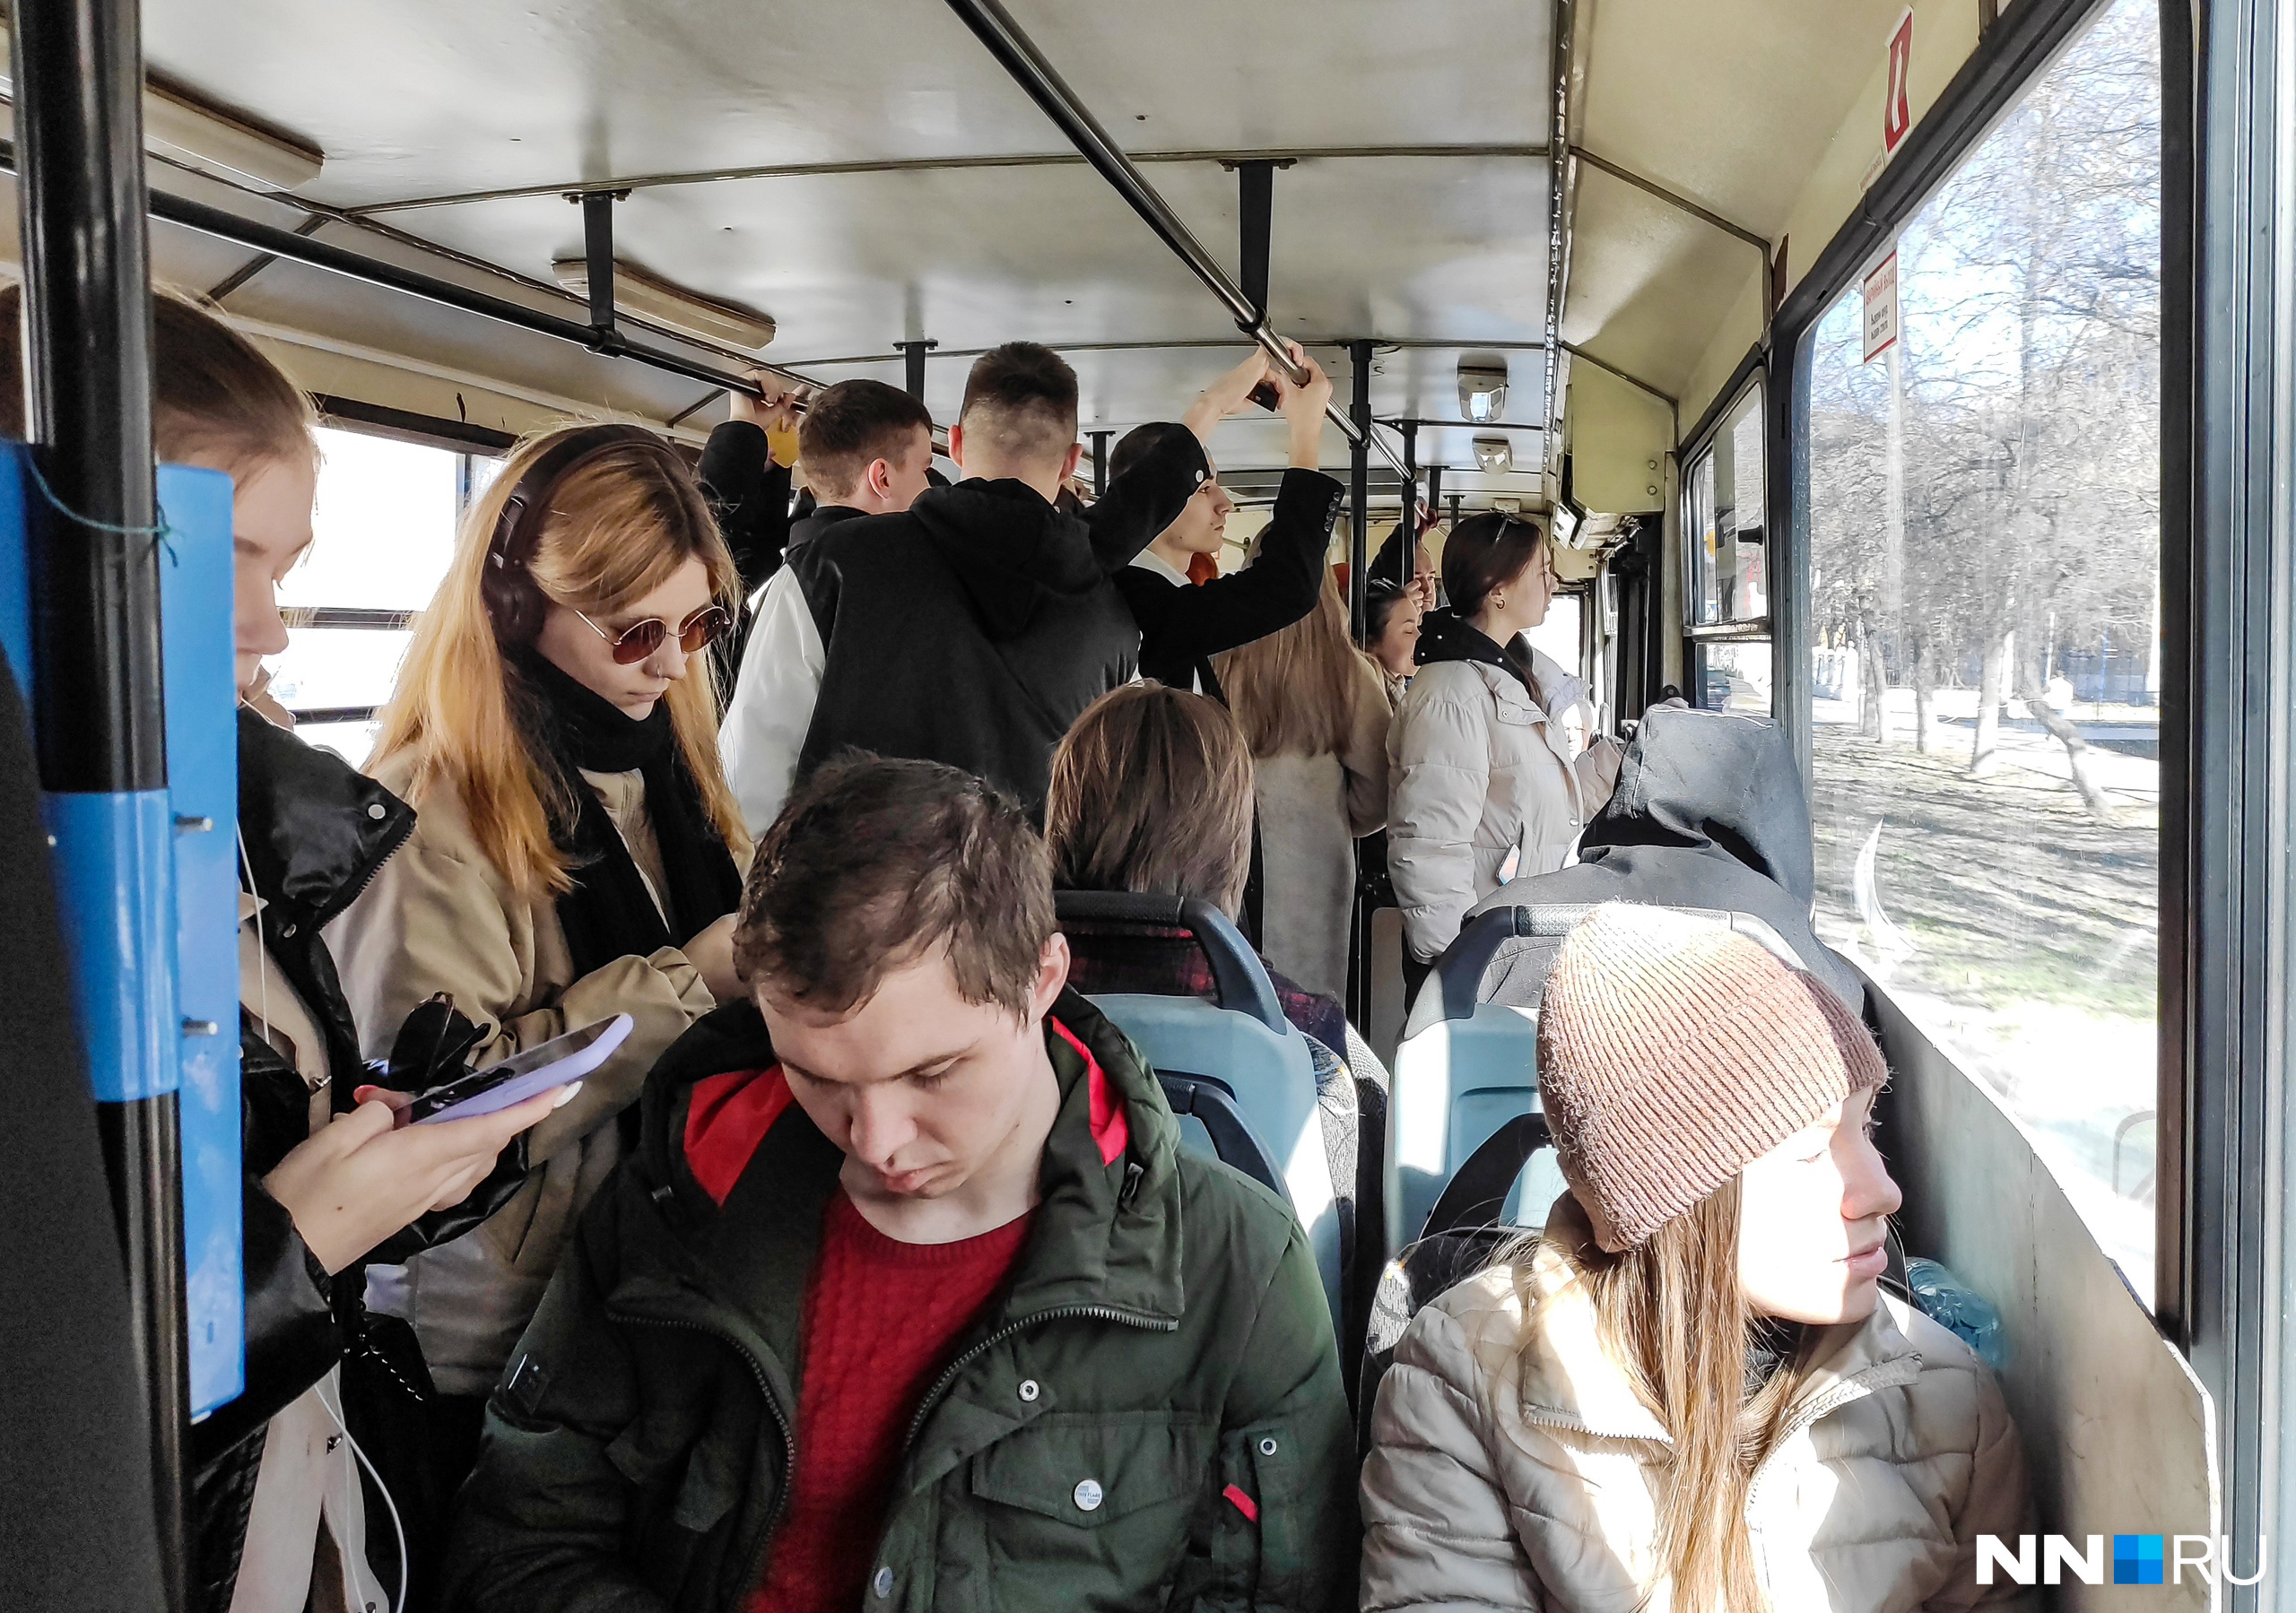 31-й маршрут ездит по проспекту Гагарина